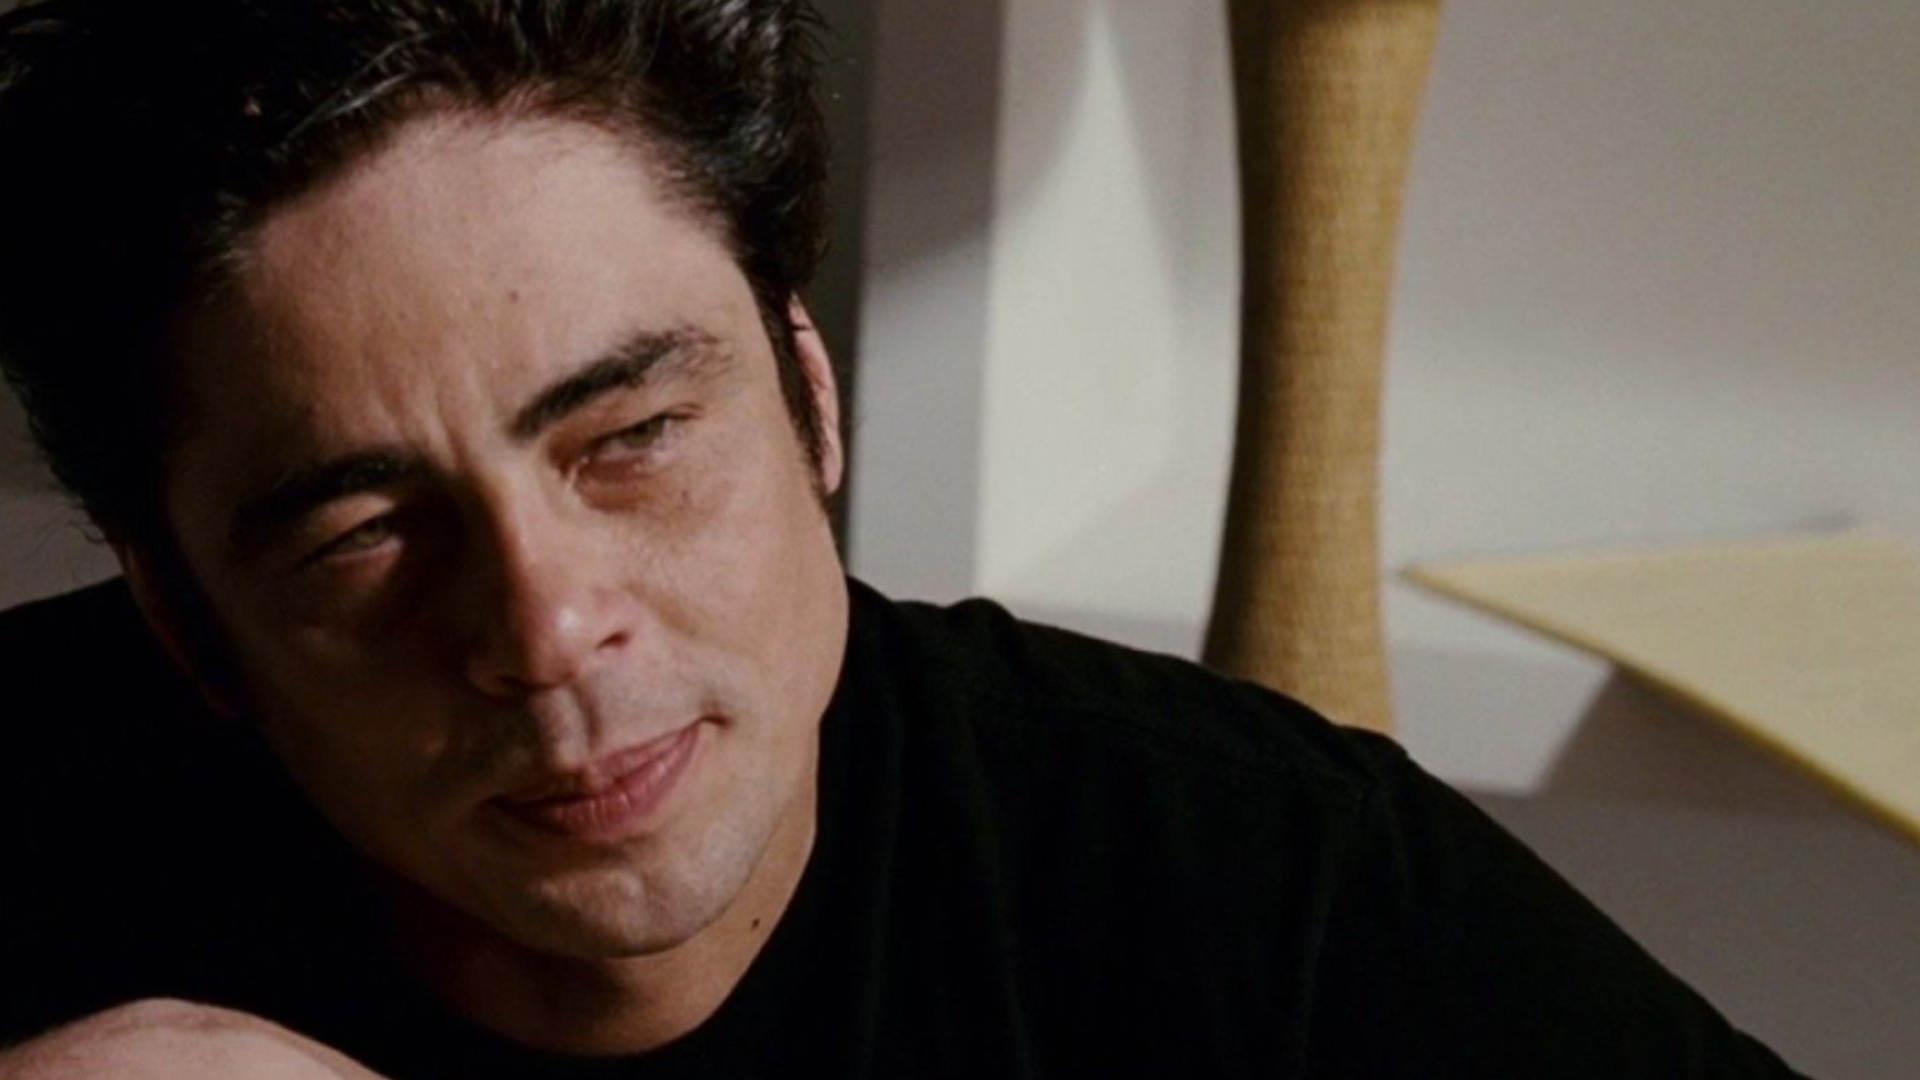 Benicio Del Toro, Cinema still, Intriguing scene, Movie moment, 1920x1080 Full HD Desktop